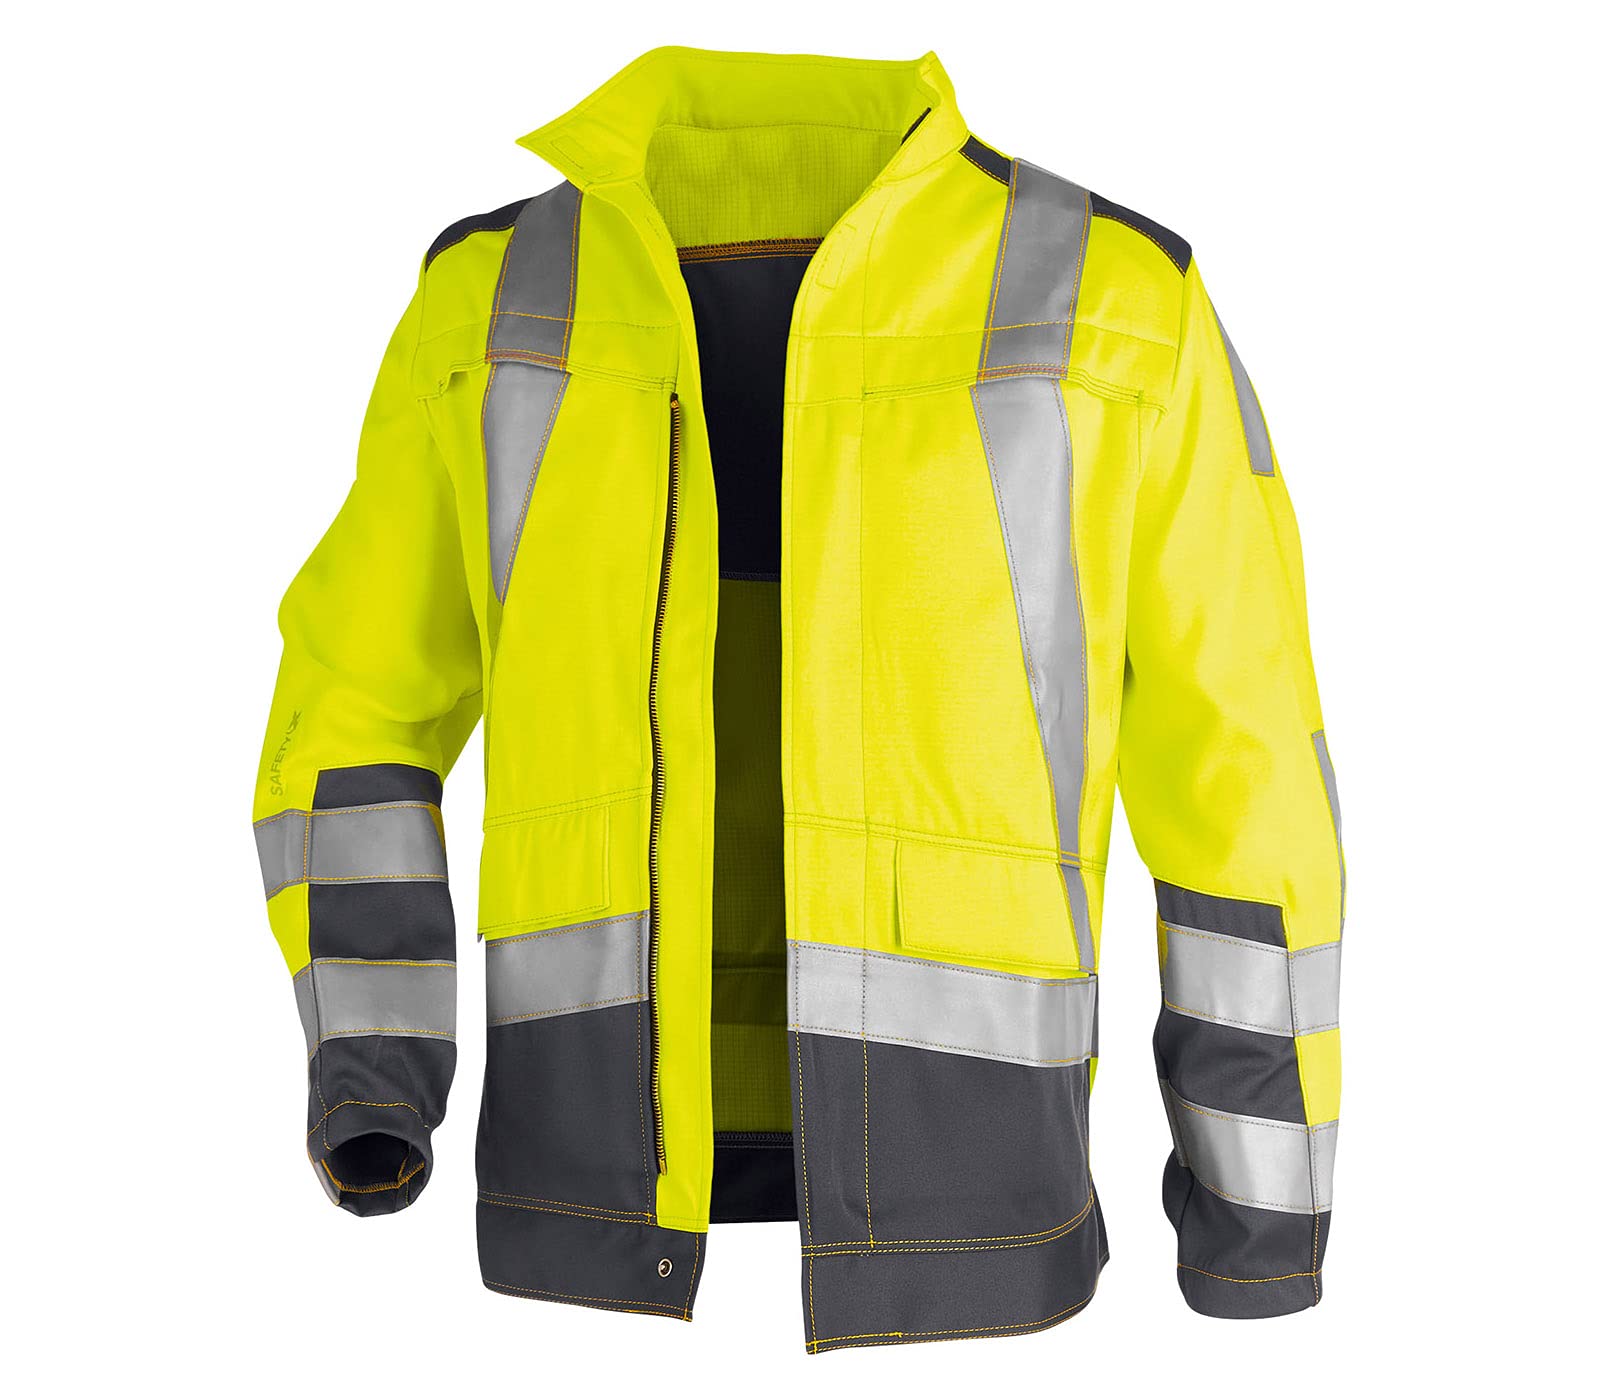 KÜBLER Workwear KÜBLER SAFETY X Arbeitsjacke warngelb, Größe 44, Herren-Arbeitsjacke aus Mischgewebe, zertifizierte Arbeitsjacke